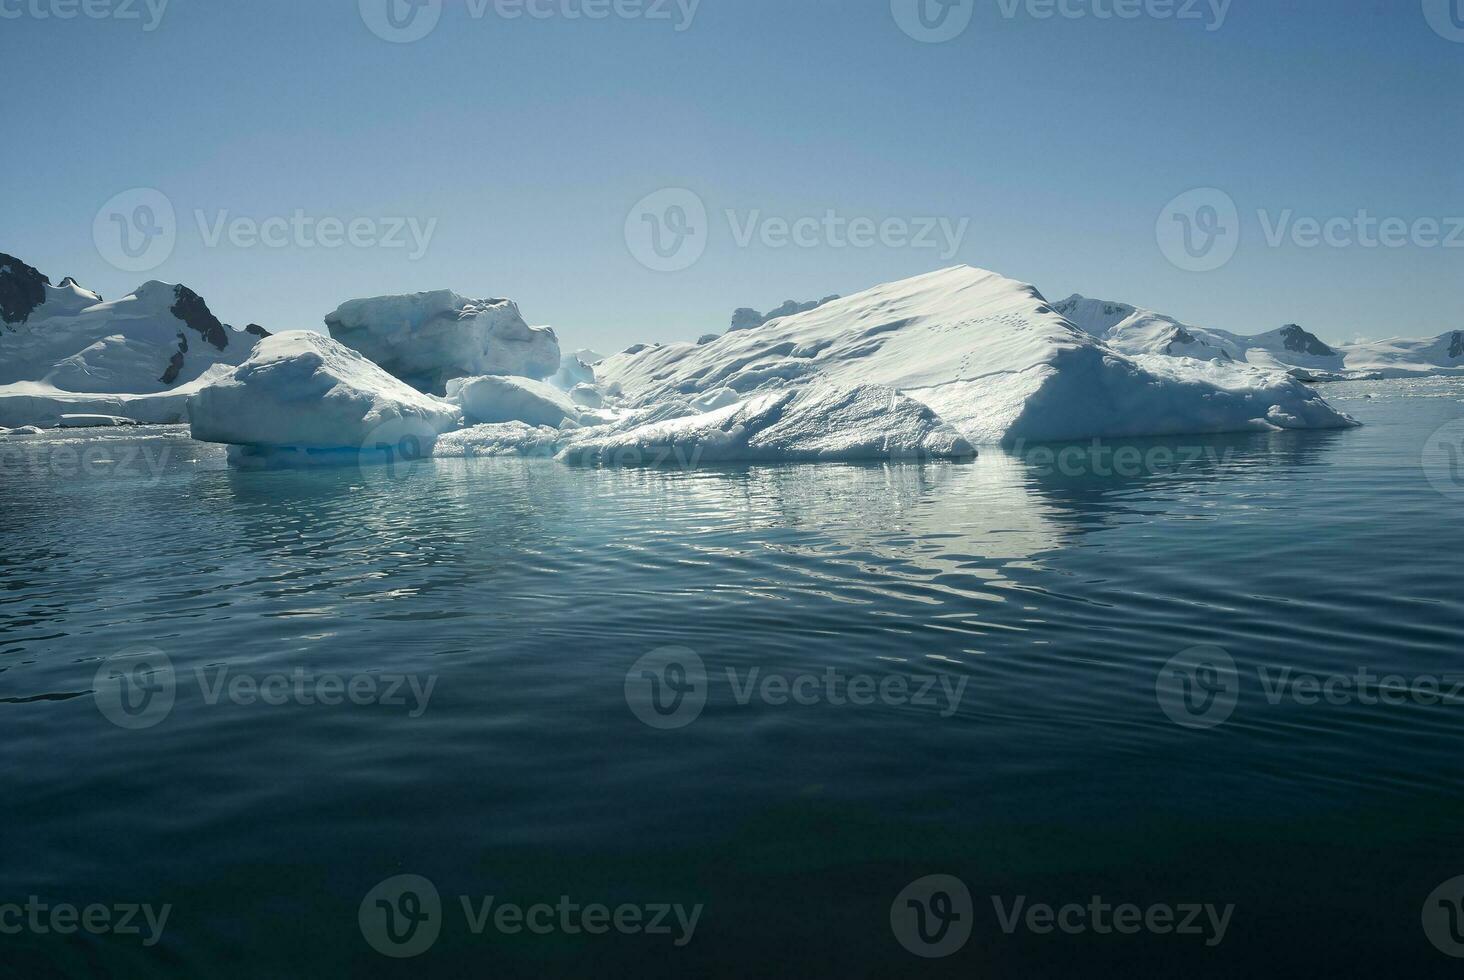 paraíso baía geleiras e montanhas, antártico Península, antártica.. foto